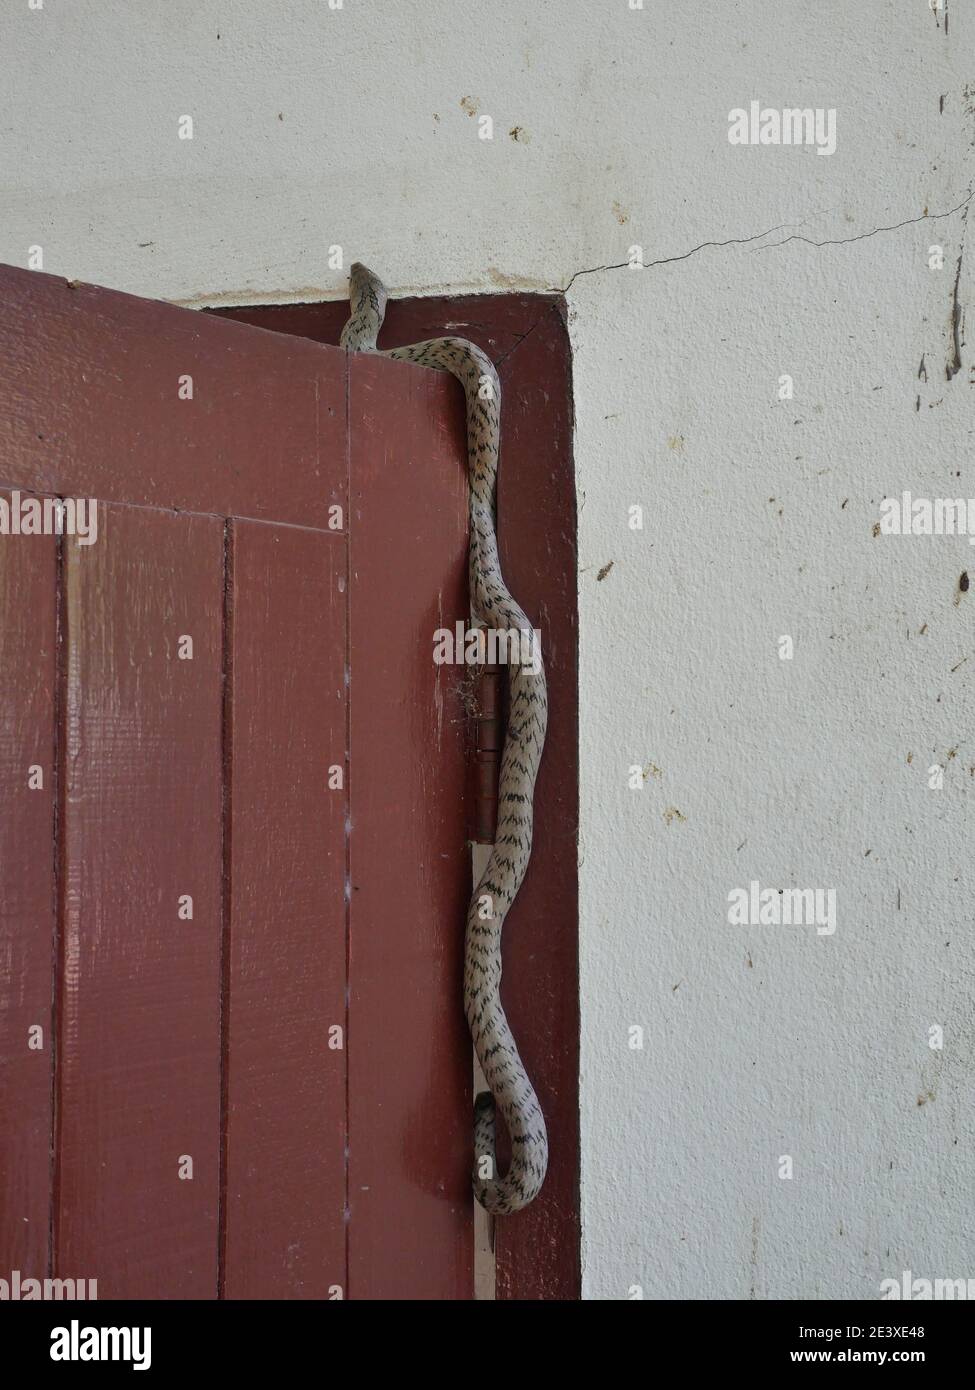 Le serpent kukri Banded ( Oligodon fasciolatus ) sur une porte en bois rouge à l'ancien mur gris, bandes noires sur le corps de reptile gris, reptile toxique Banque D'Images